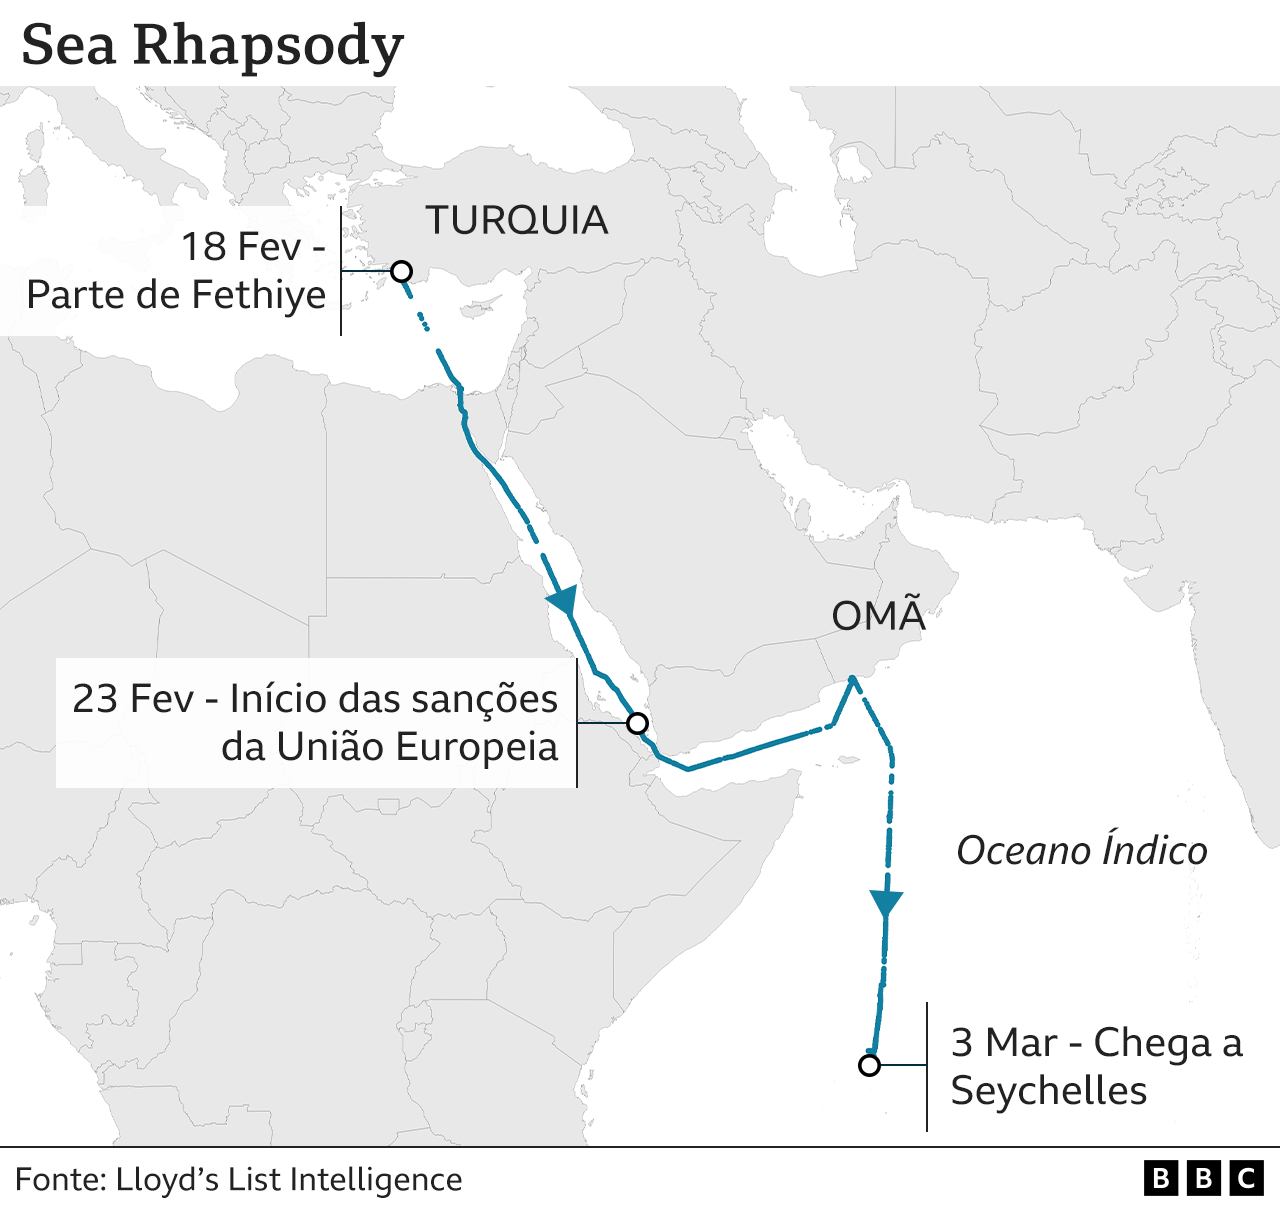 Mapa mostra trajeto do Rhapsody